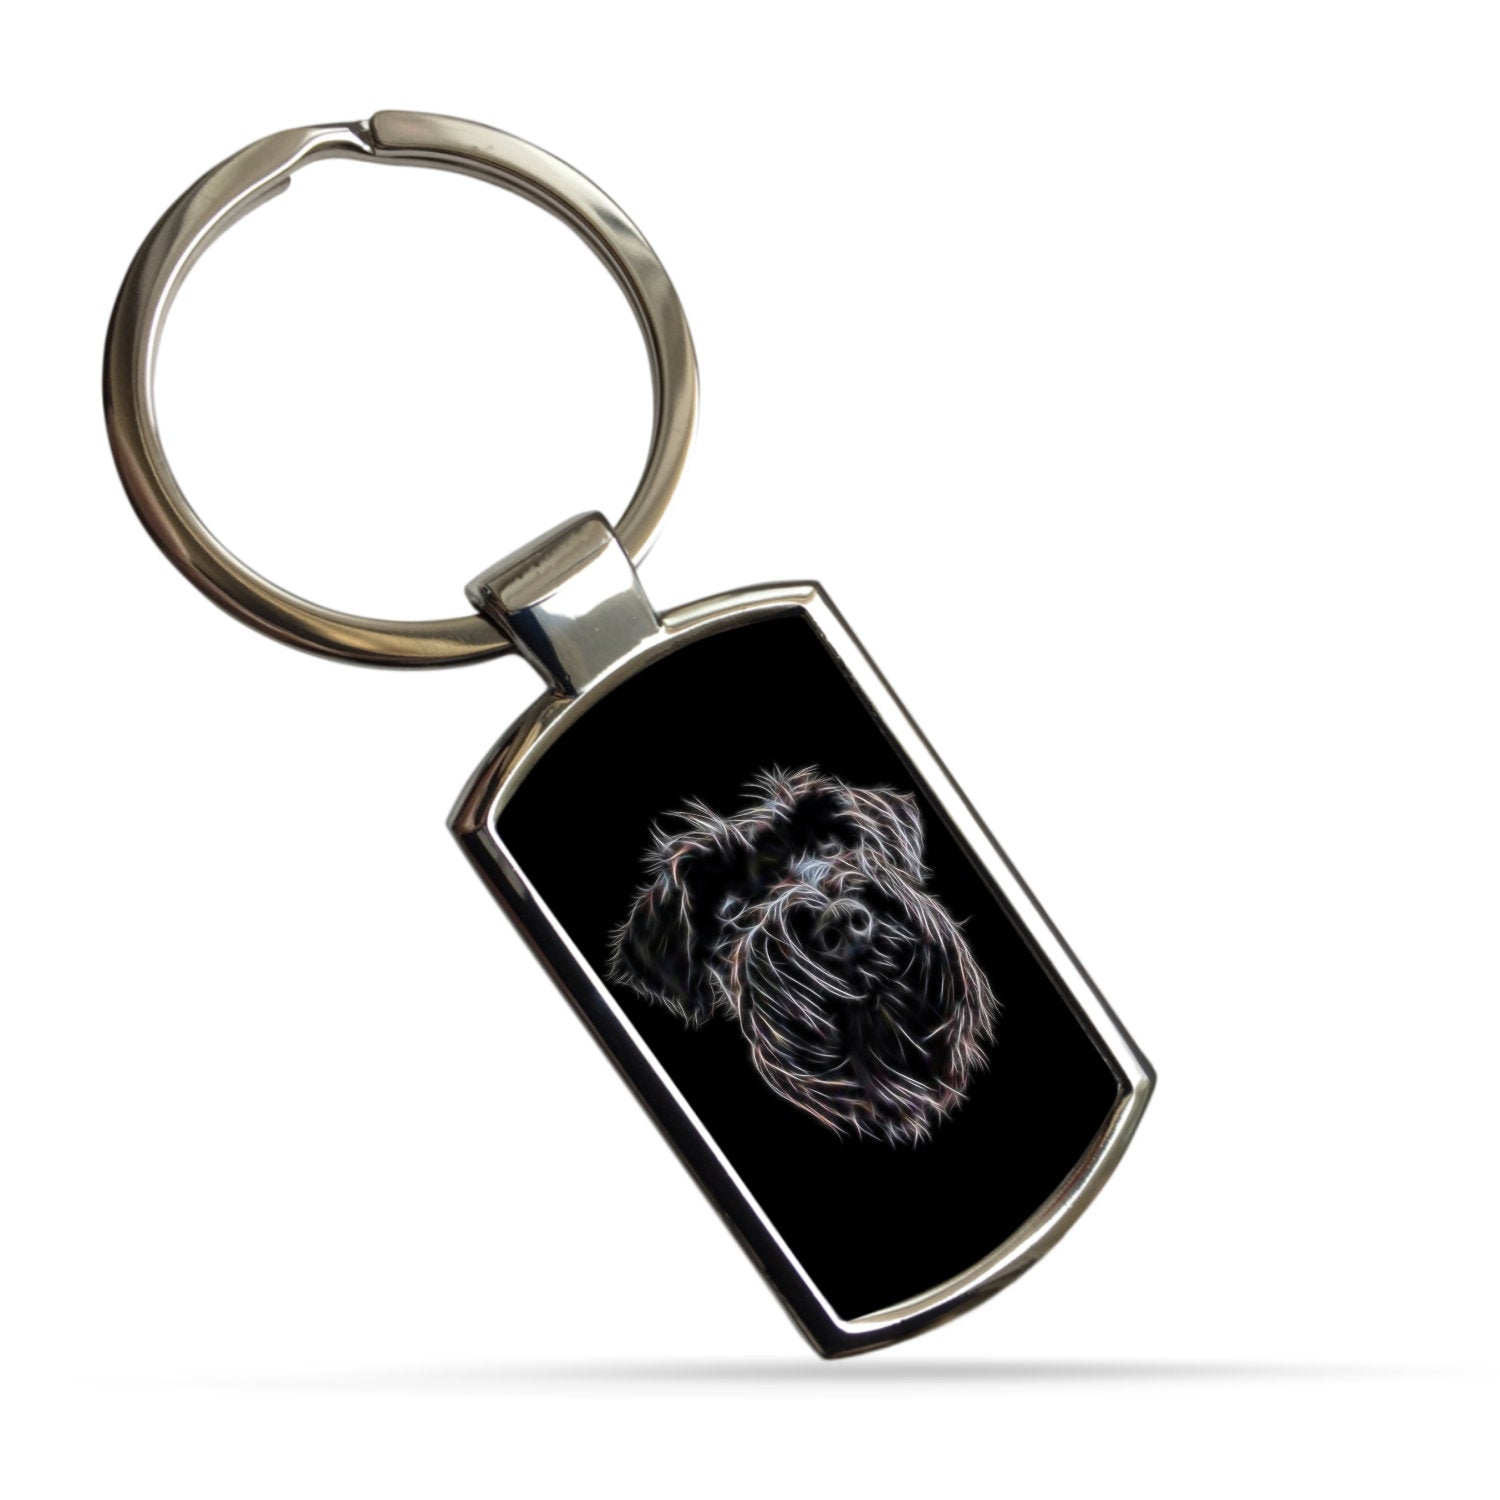 Black Schnauzer Keychain with Stunning Fractal Art Design.